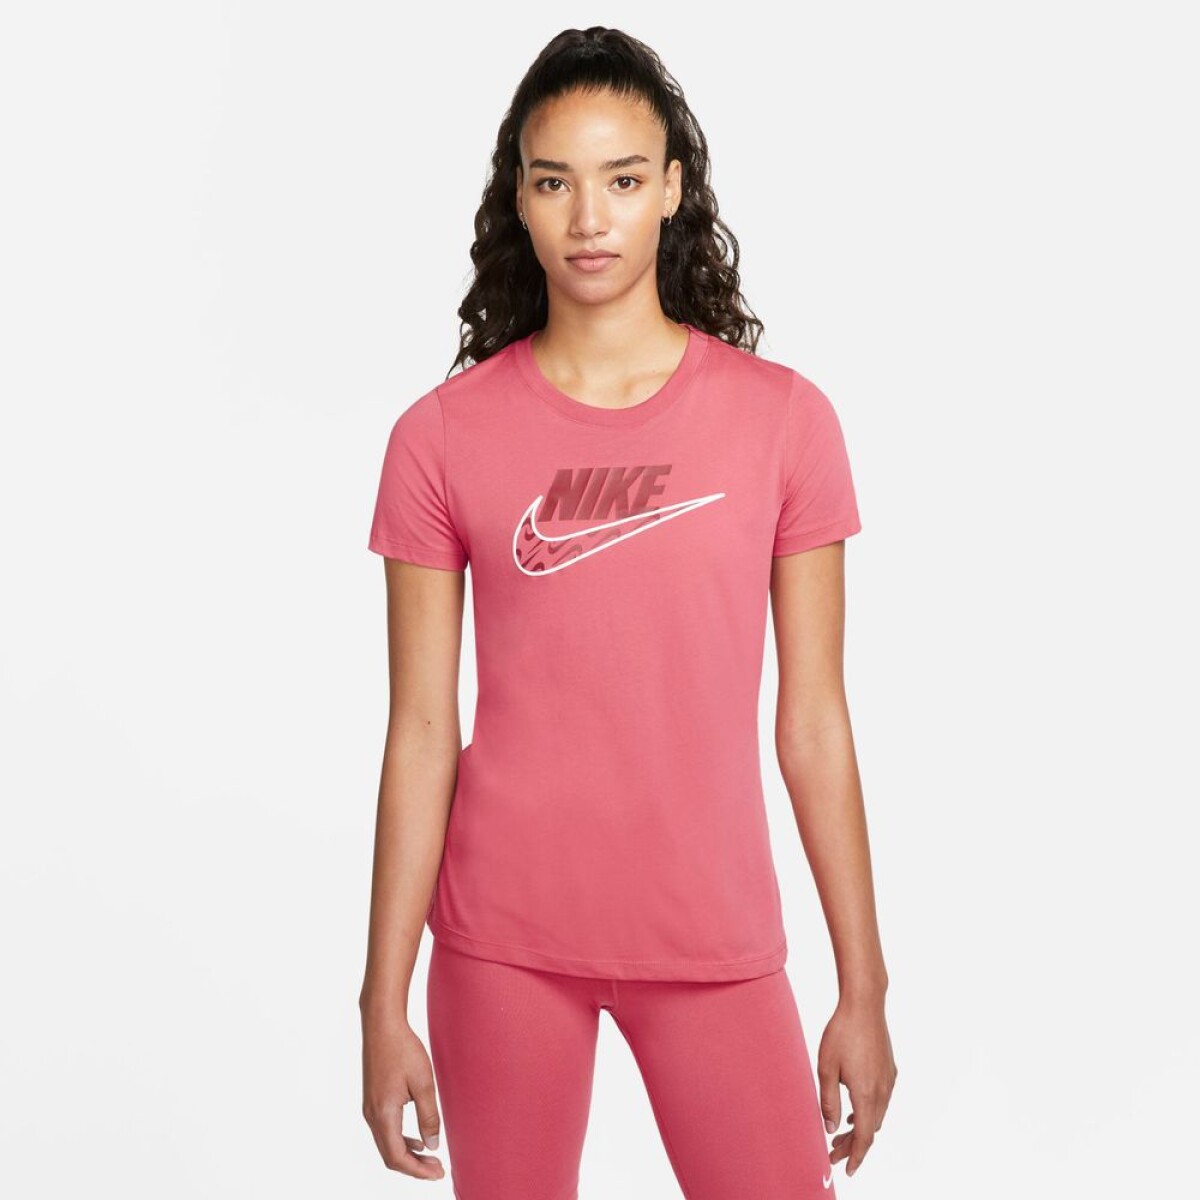 Remera Nike Moda Dama Tee Icon - S/C 